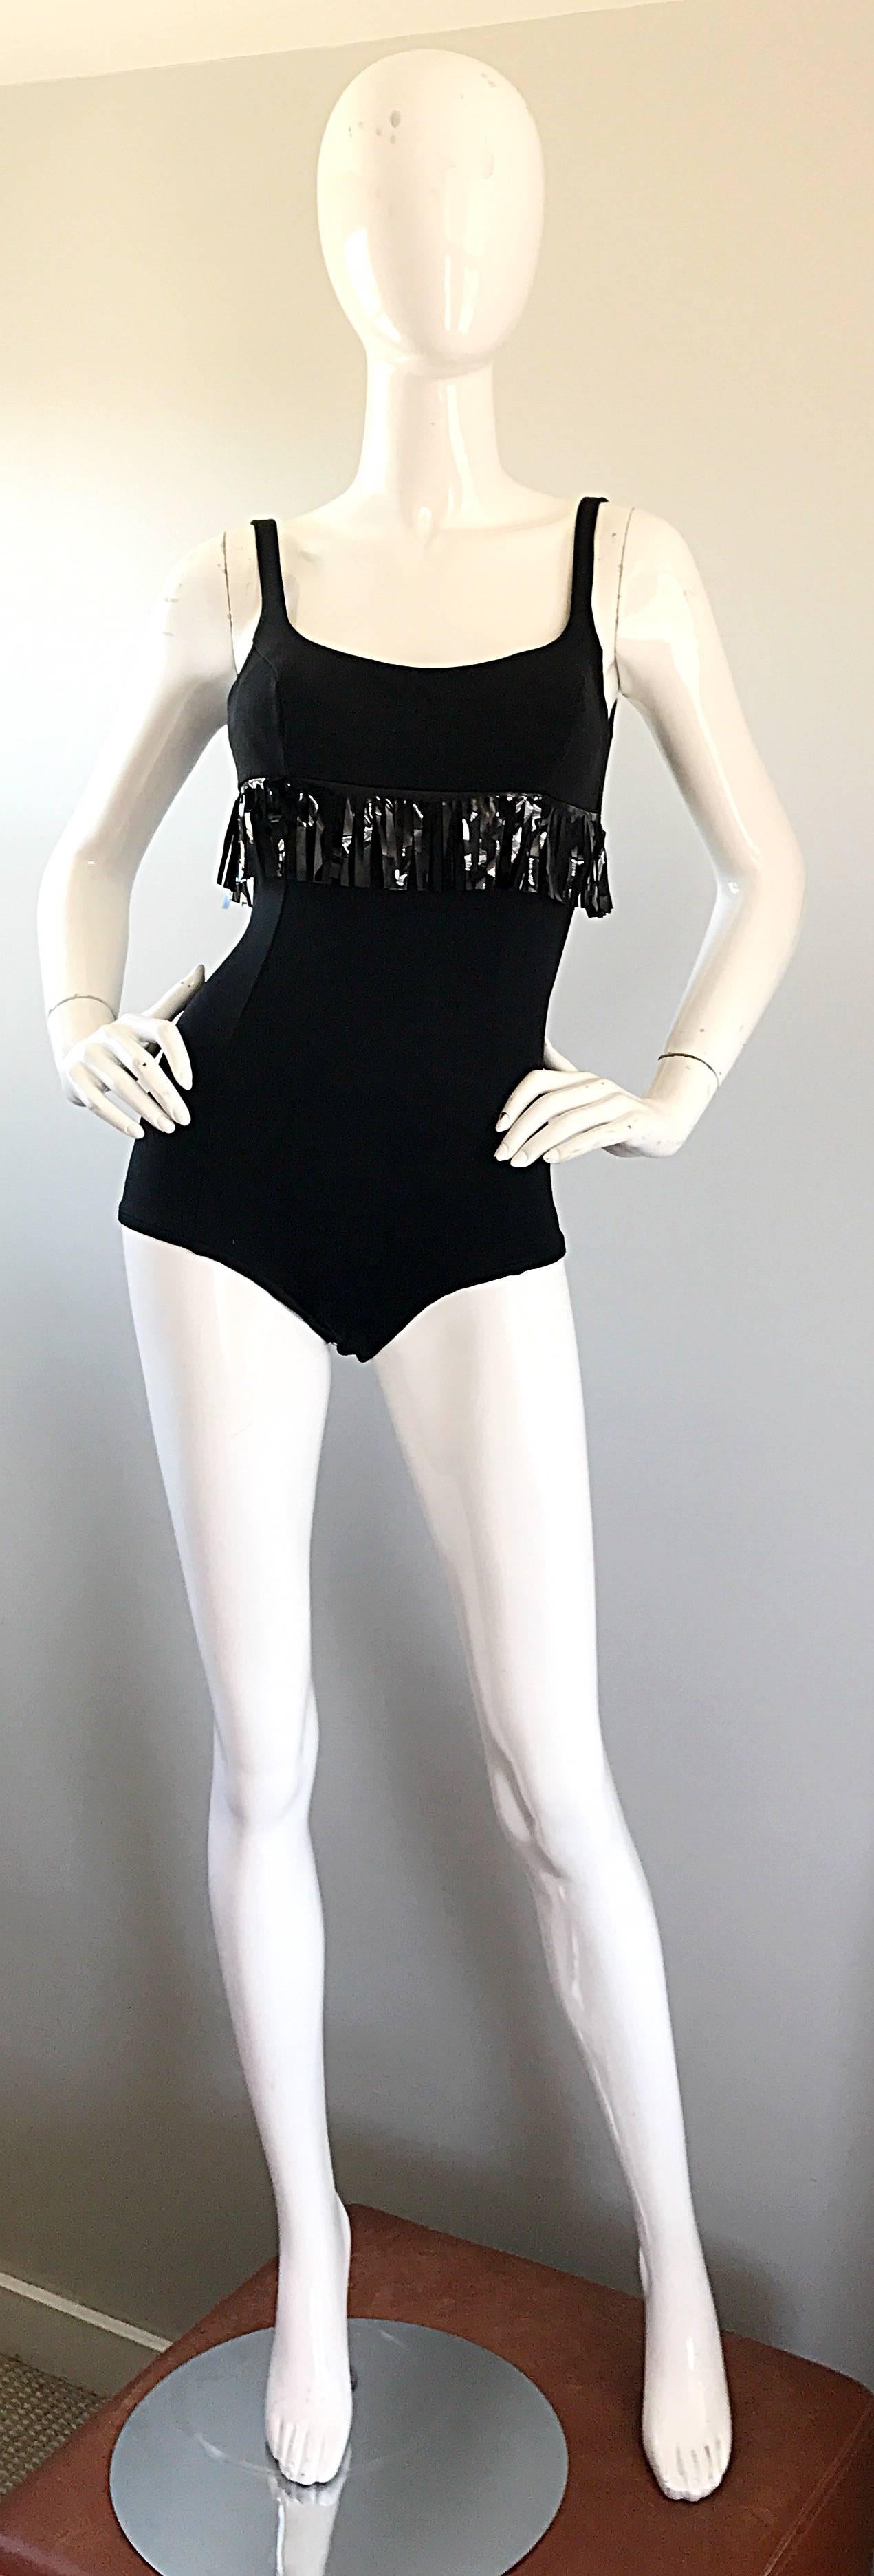 Superschicker OLEG CASSINI 1960er Jahre schwarzer Vinyl-Fransen-Badeanzug oder Body! Schmeichelhafter, knabenhafter Schnitt, der das Gesäß perfekt bedeckt und sich dehnt, um zu passen. Schwarze Vinylfransen unterhalb der Taille. Die verstellbaren